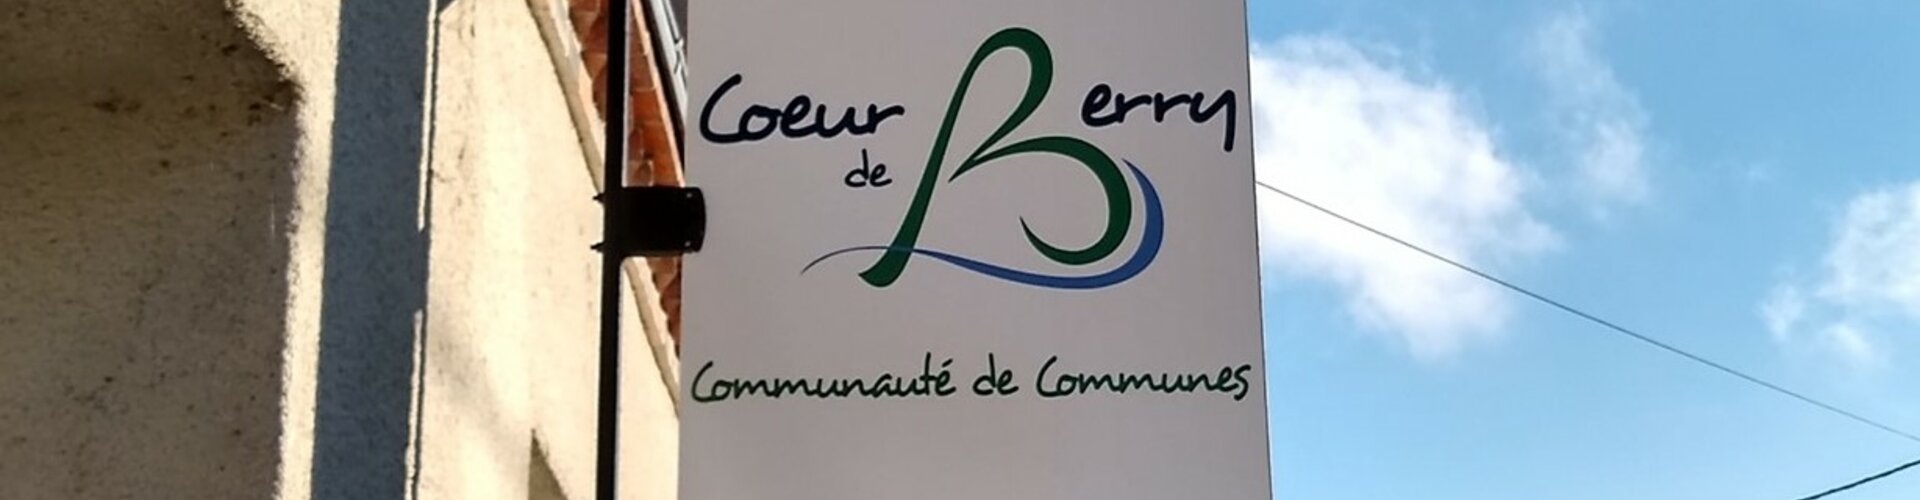 Accueil et services de la Communauté de Communes Cœur de Berry